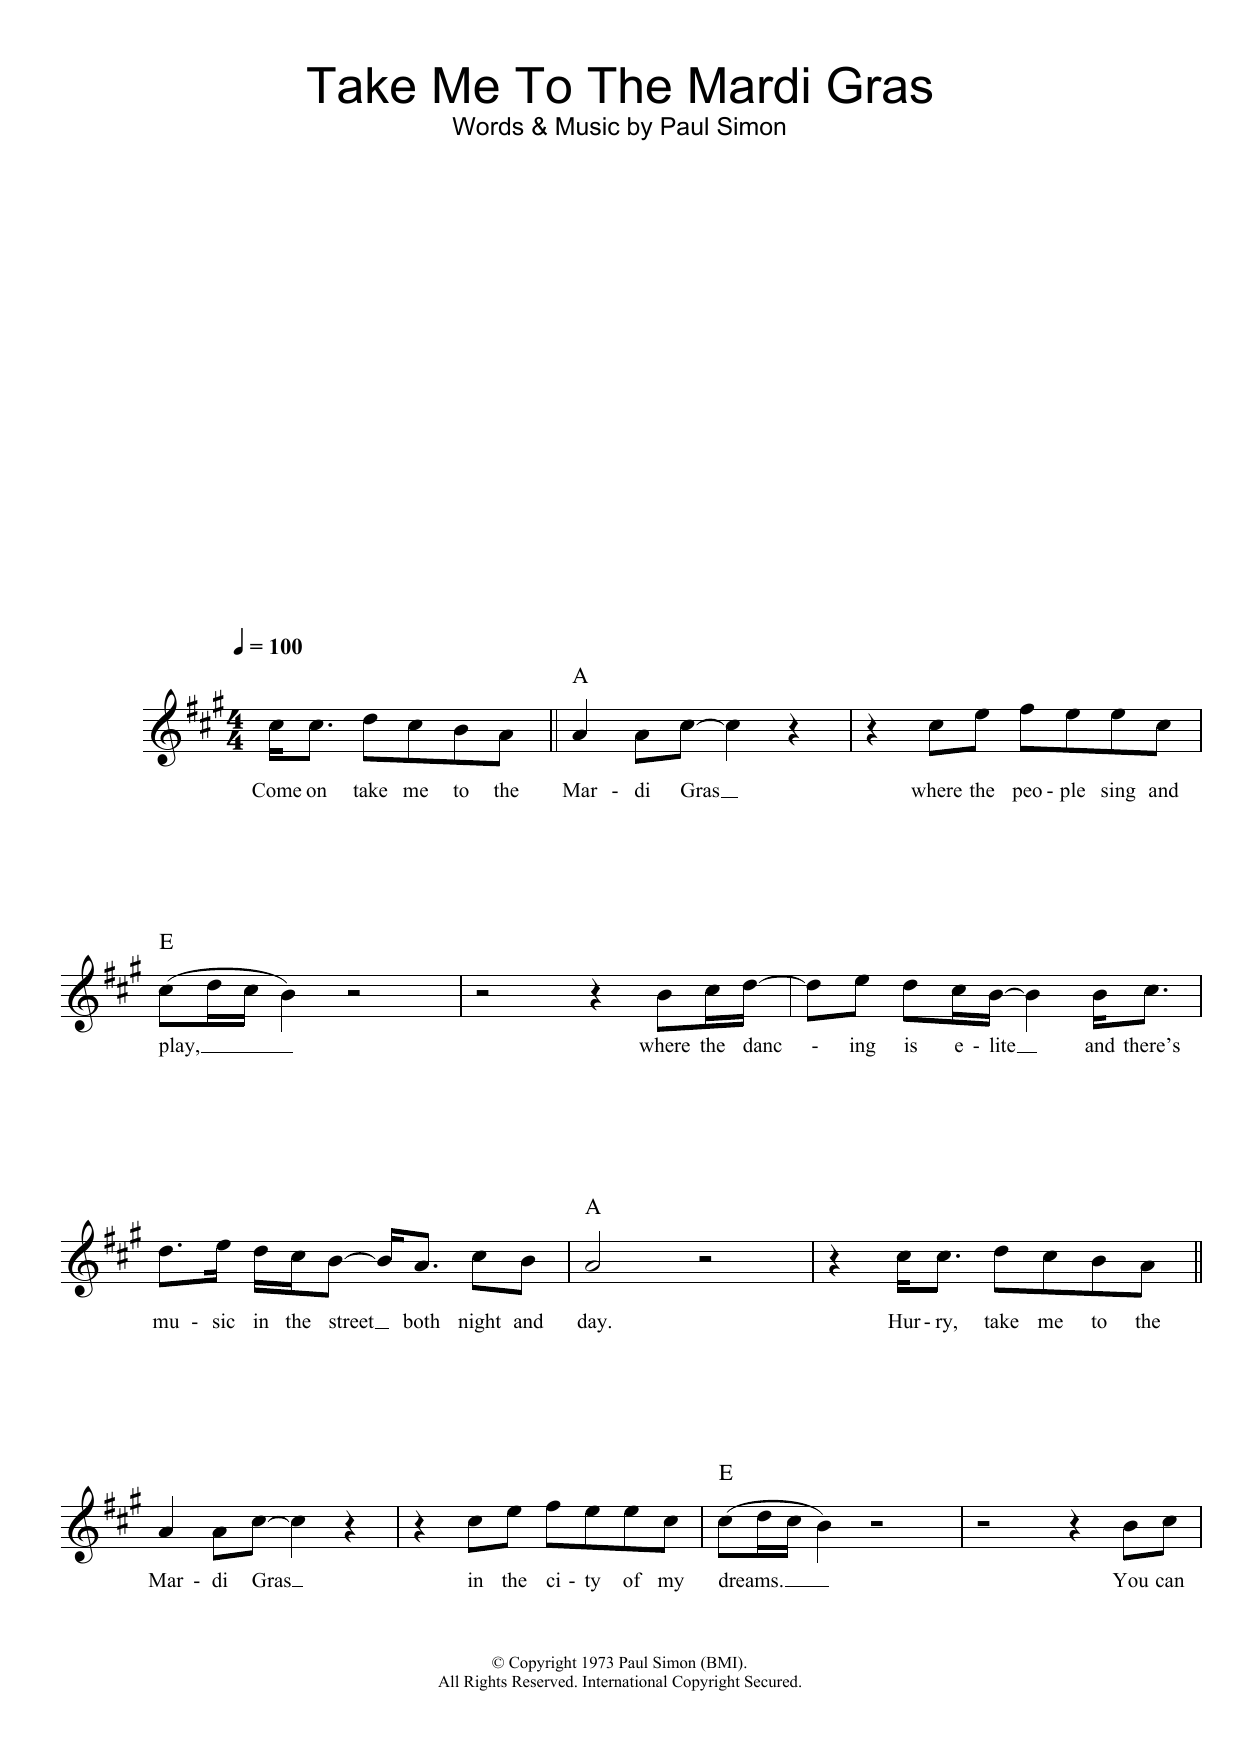 Simon & Garfunkel Take Me To The Mardi Gras Sheet Music Notes & Chords for Lead Sheet / Fake Book - Download or Print PDF